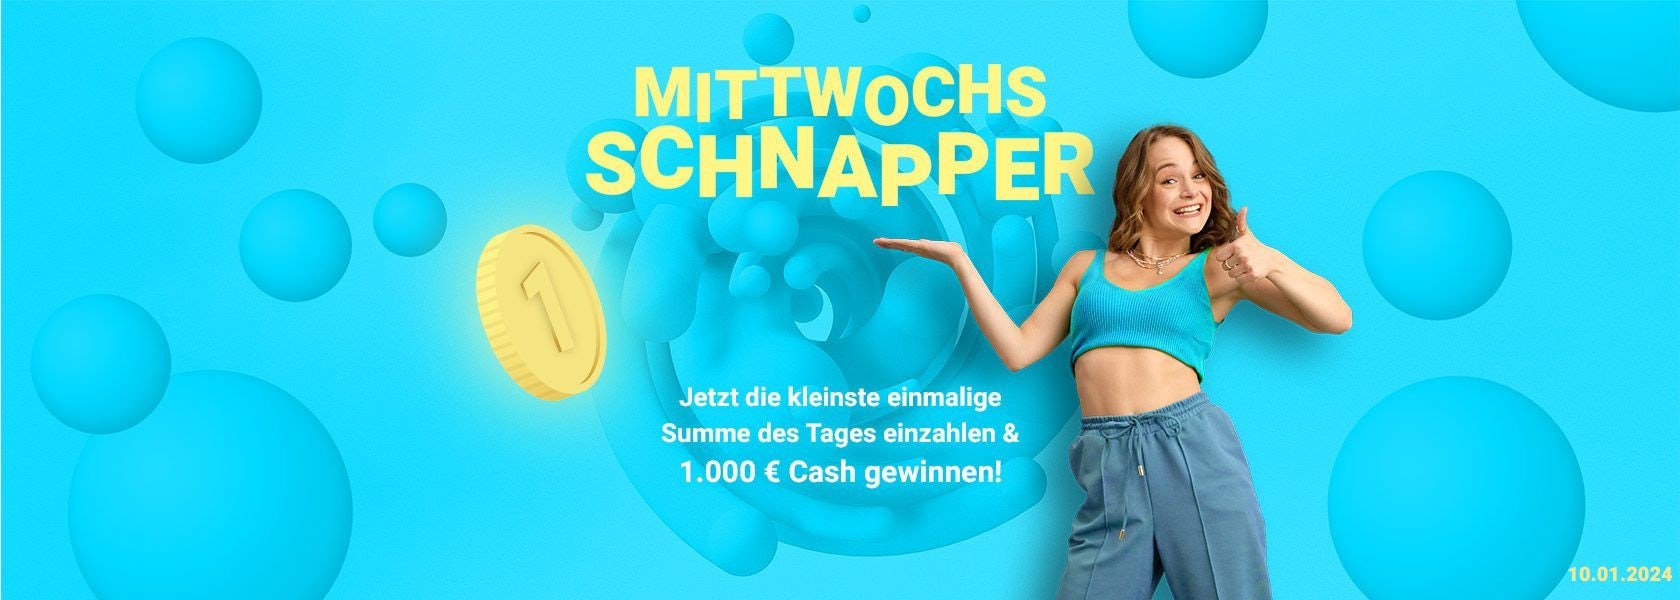 mittwochs-schnapper-100120